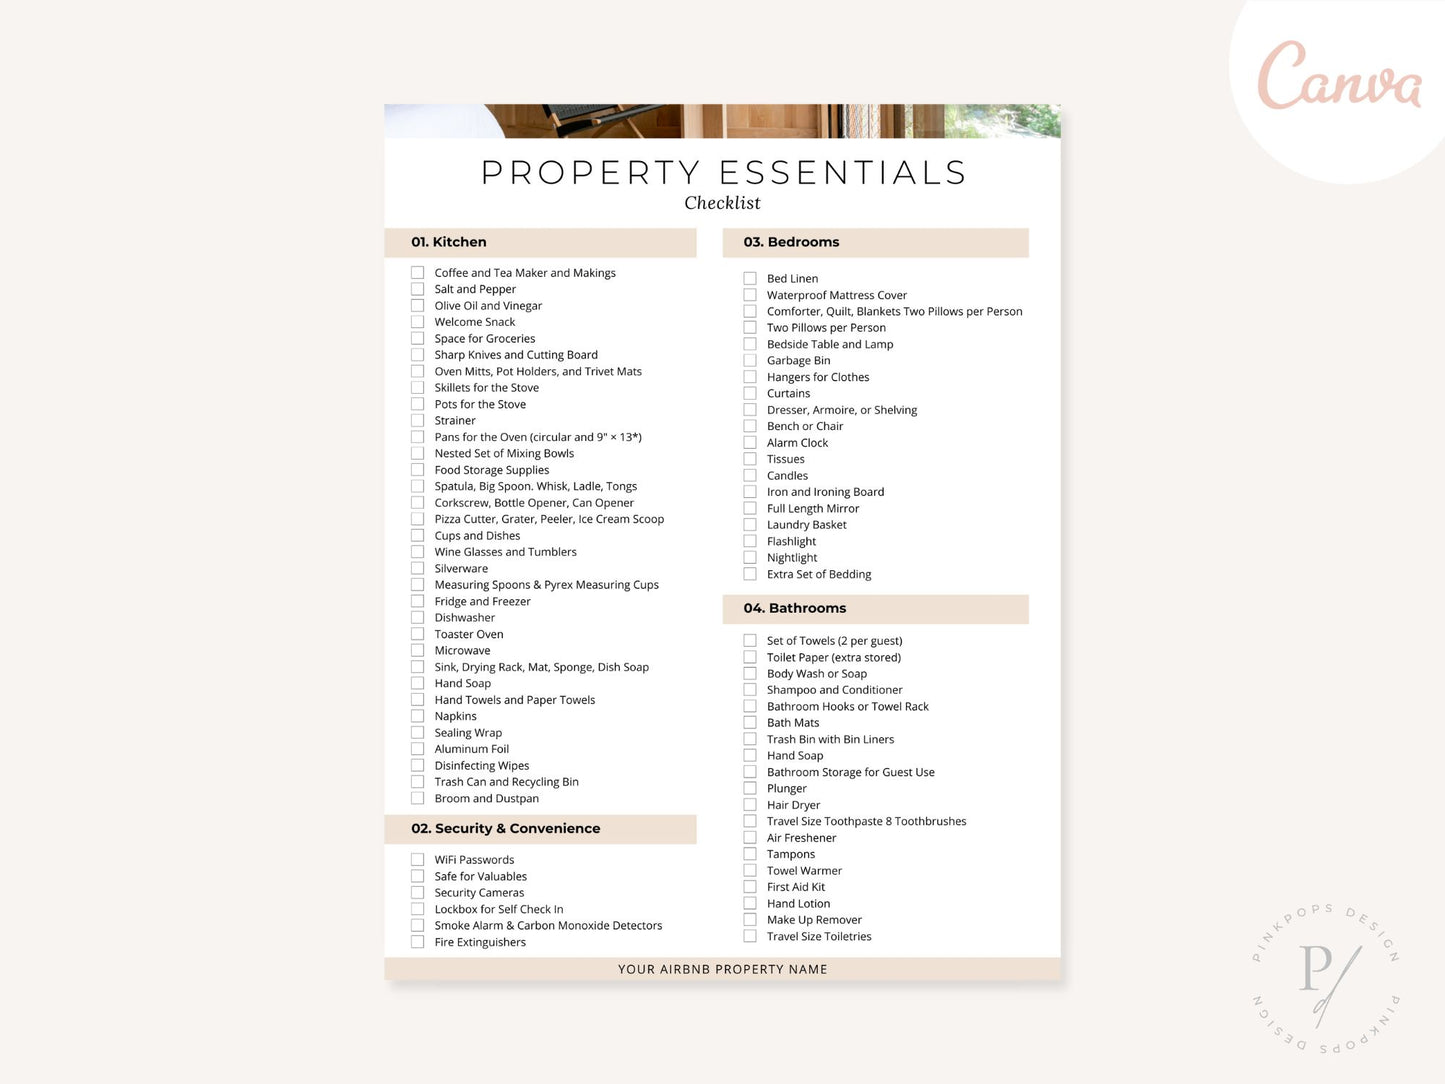 AirBnb Property Essentials Checklist